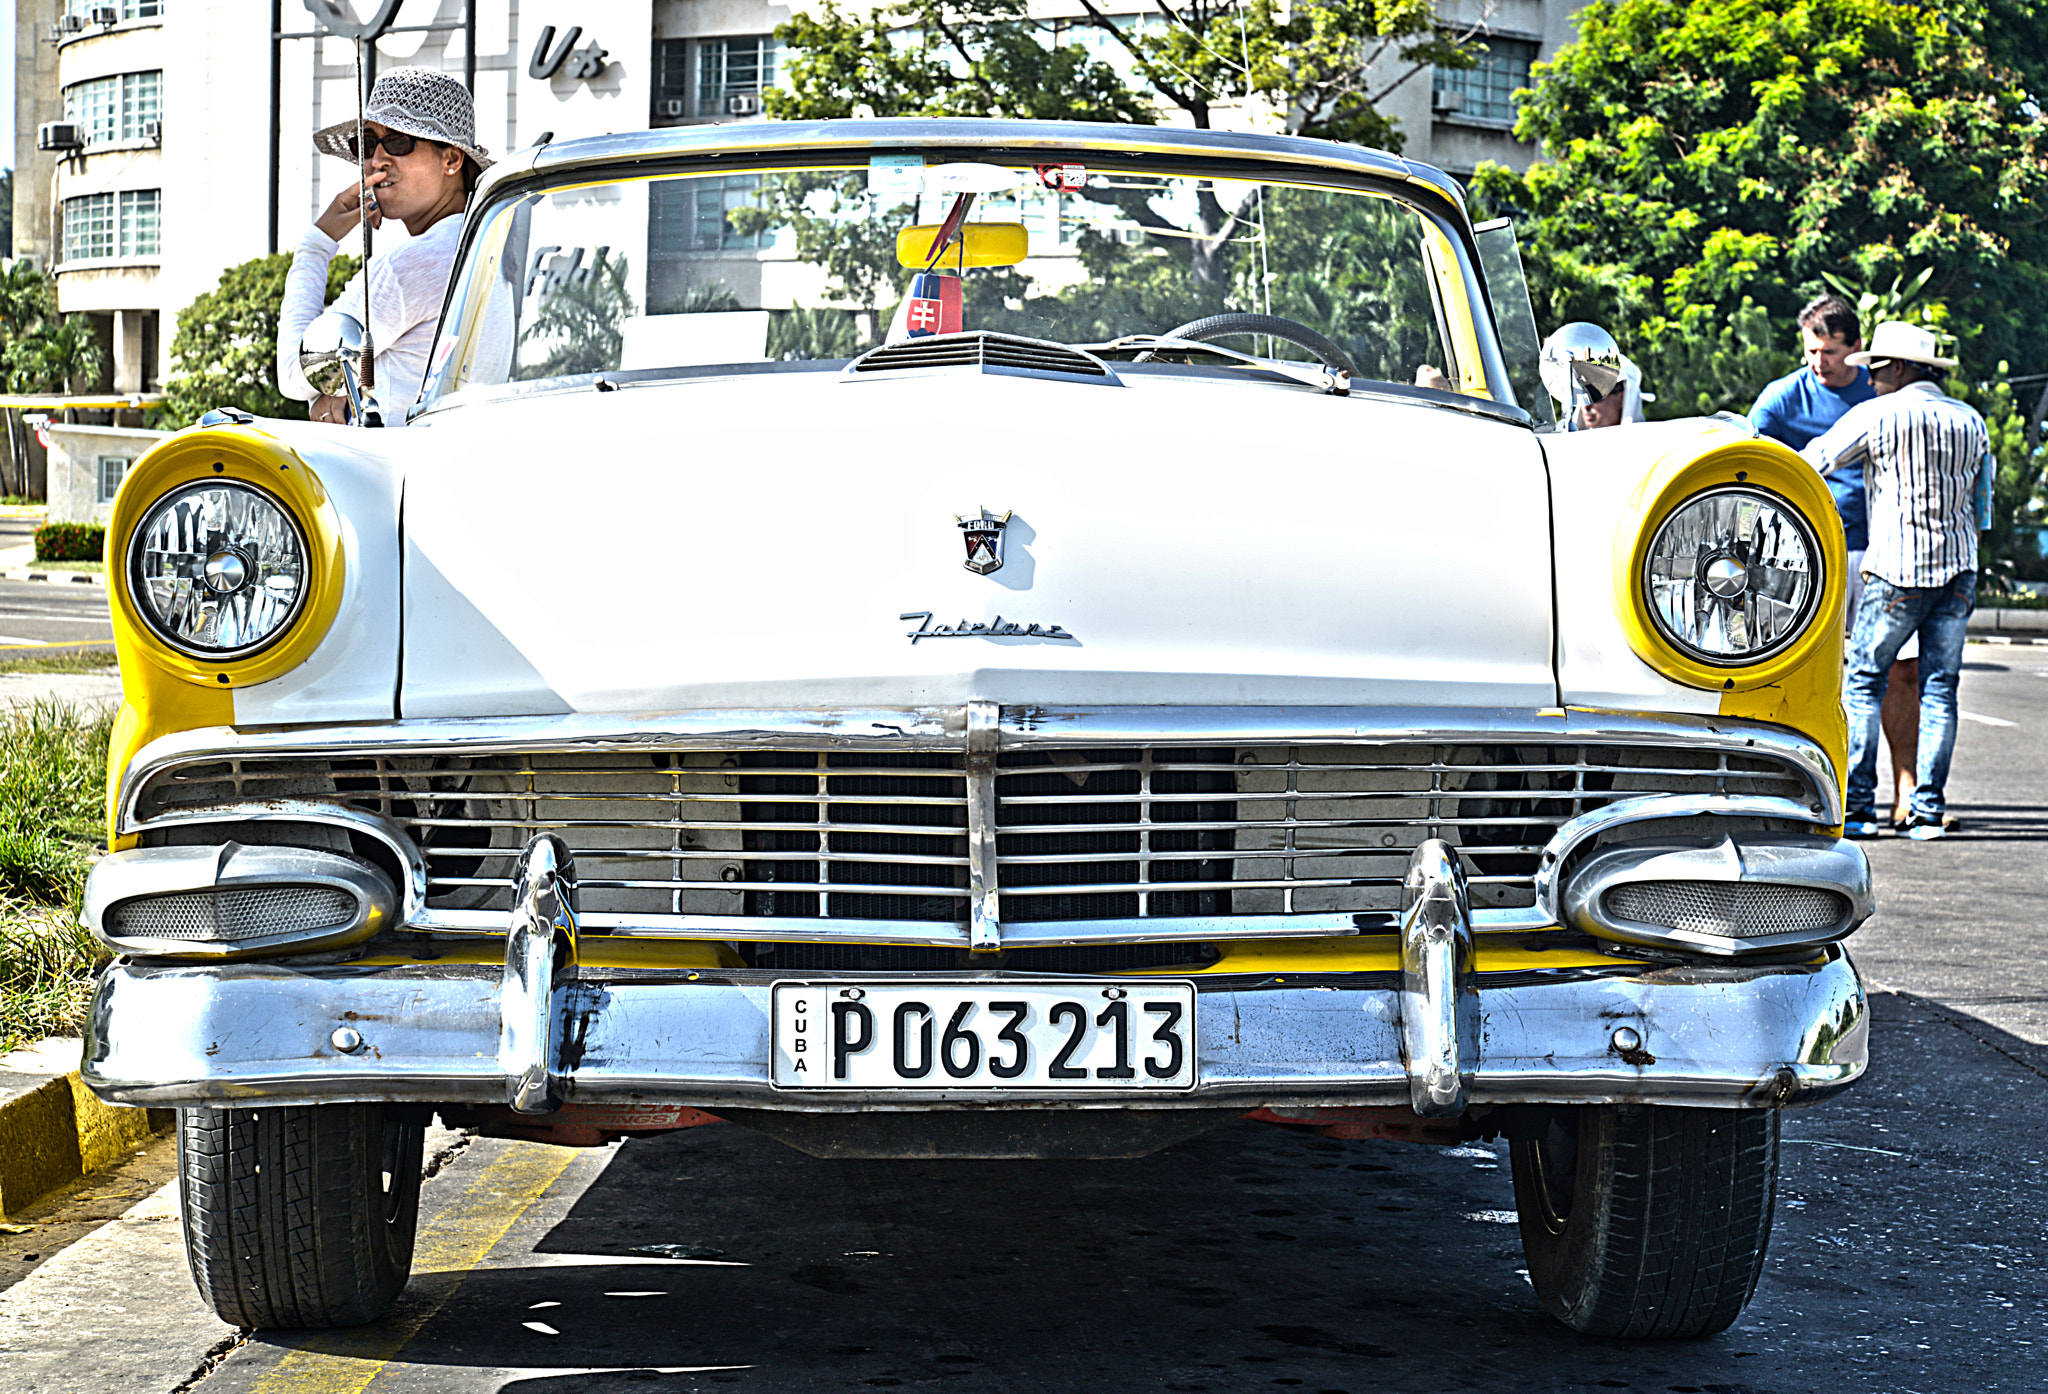 Nikon D600 + AF Zoom-Nikkor 35-105mm f/3.5-4.5D sample photo. Havana auto photography